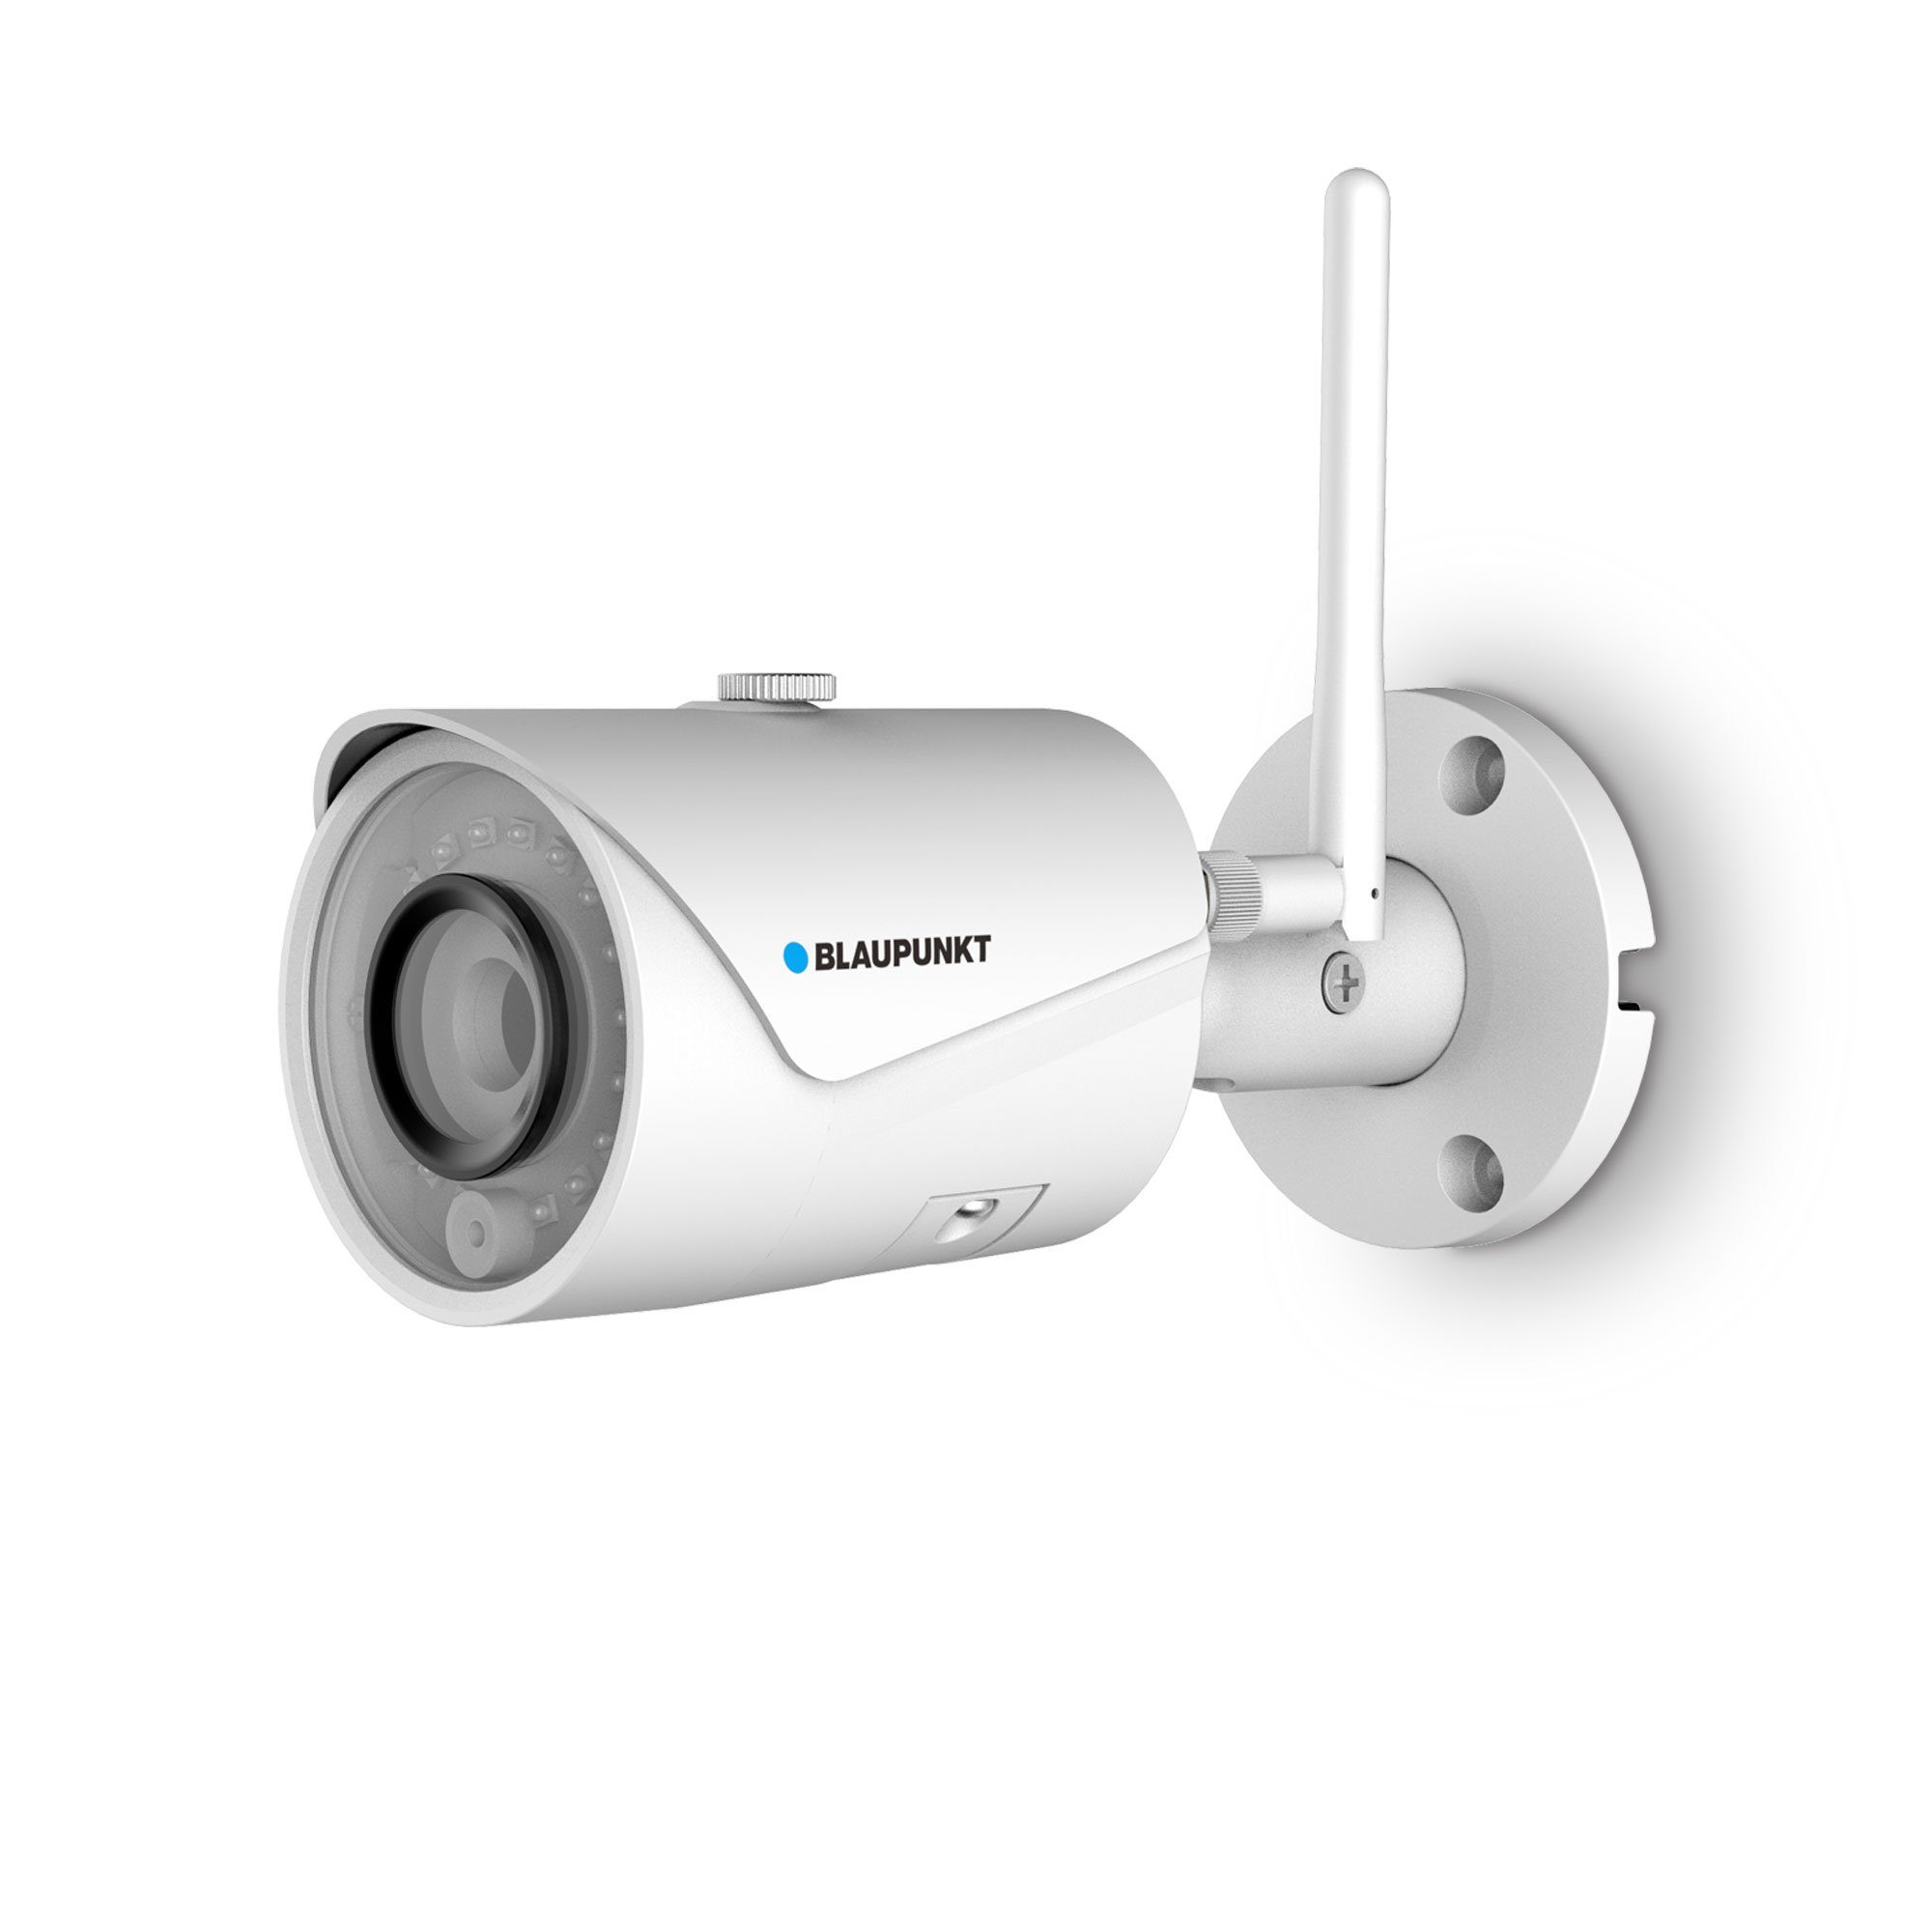 Blaupunkt BLAUPUNKT VIO-B40 2K Full-HD IP I Bullet Überwachungskamera /  2688 x 1520 2K Auflösung I Outdoor Netzwerk Überwachungskamera mit WiFi /  WLAN & Ethernet Alarmanlage